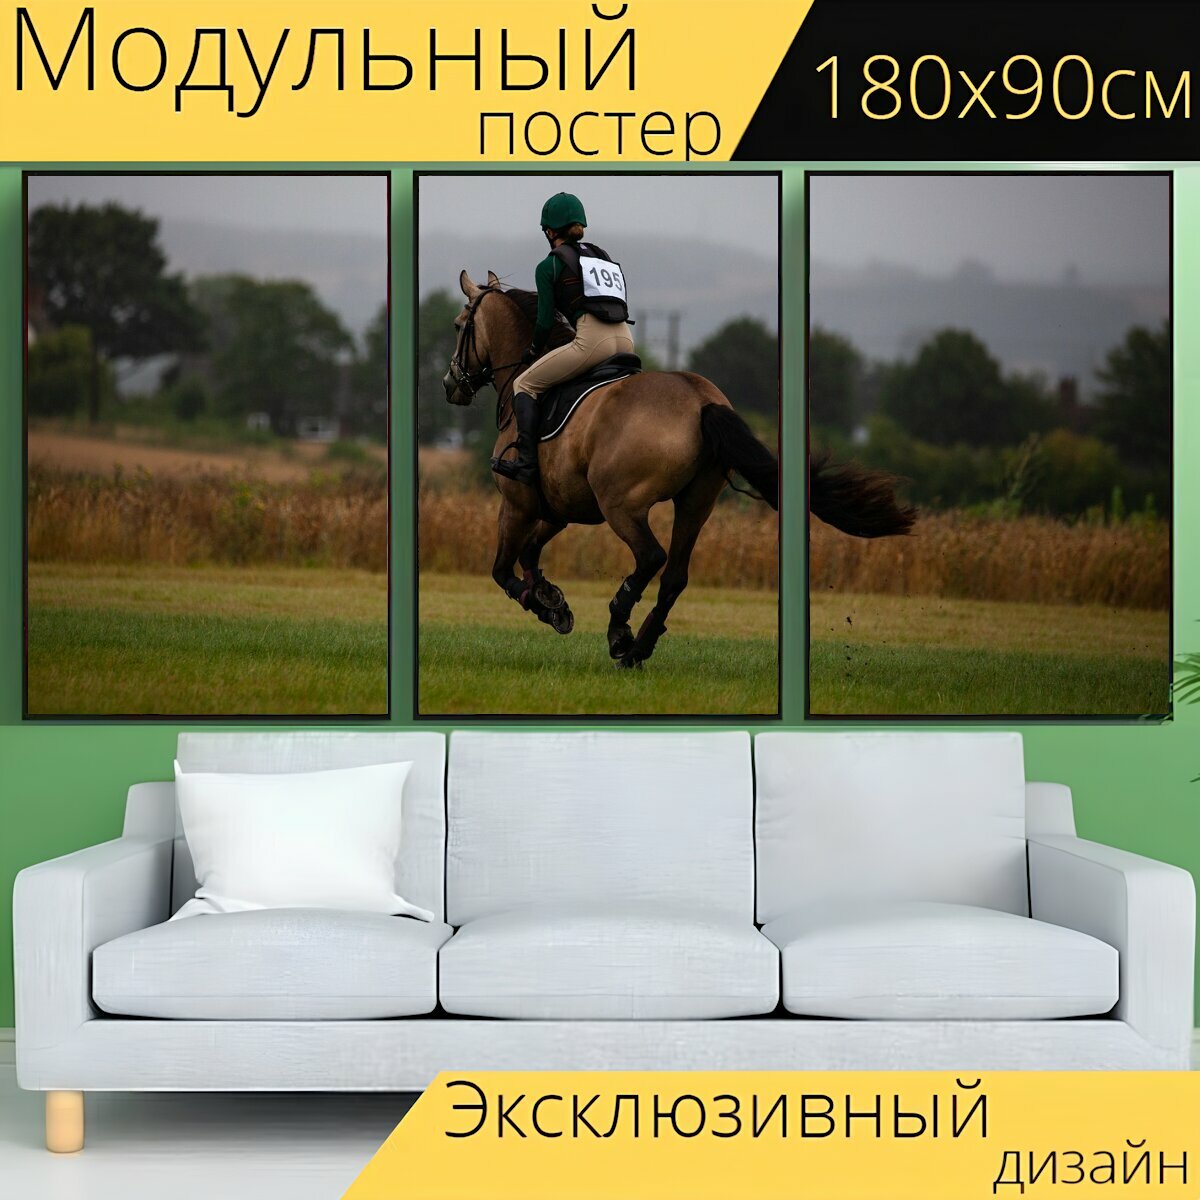 Модульный постер "Лошадь, скачущий, галопом" 180 x 90 см. для интерьера